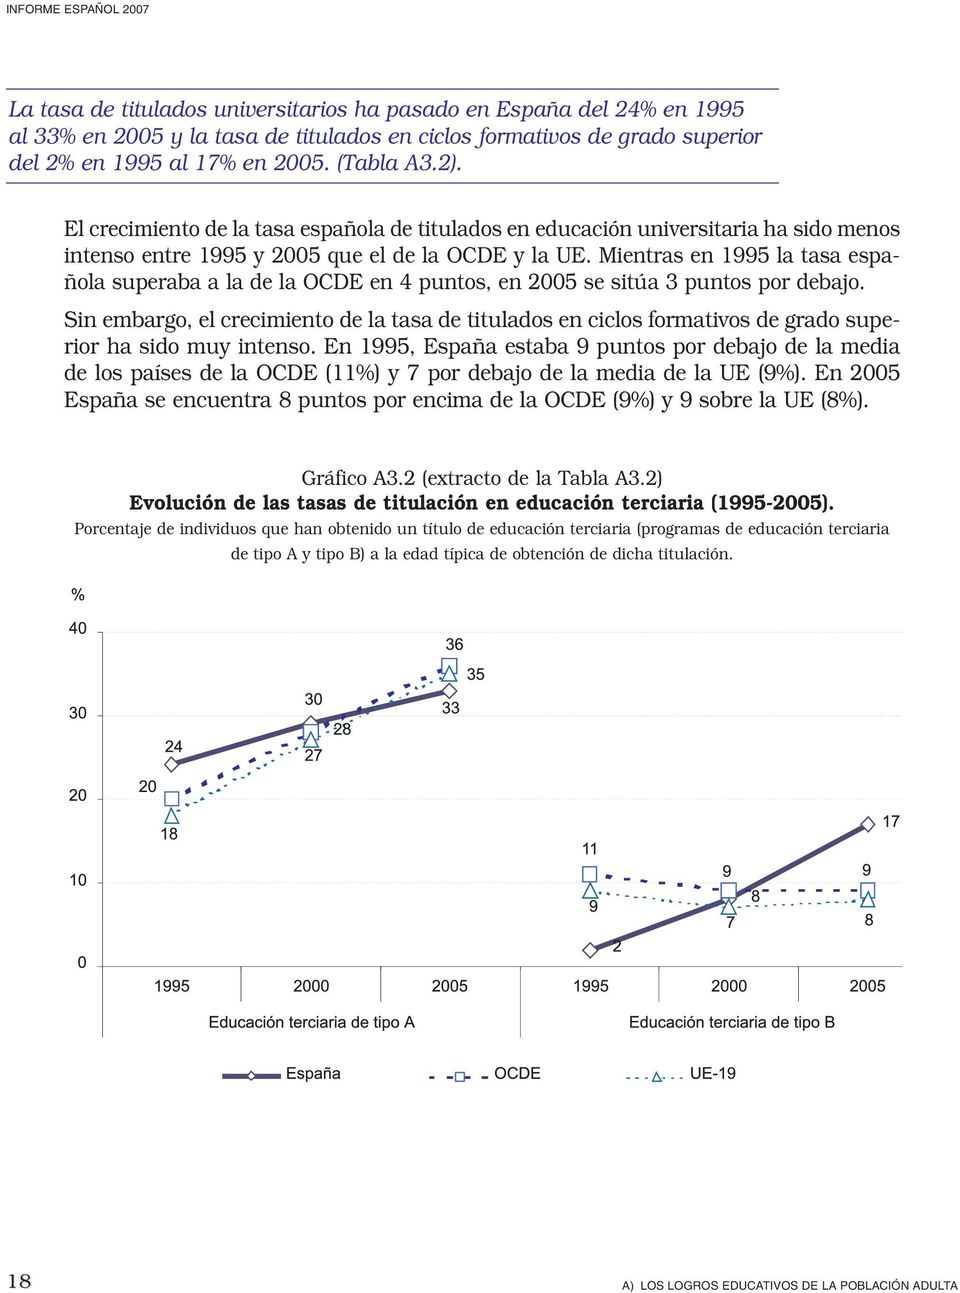 Mientras en 1995 la tasa española superaba a la de la OCDE en 4 puntos, en 2005 se sitúa 3 puntos por debajo.